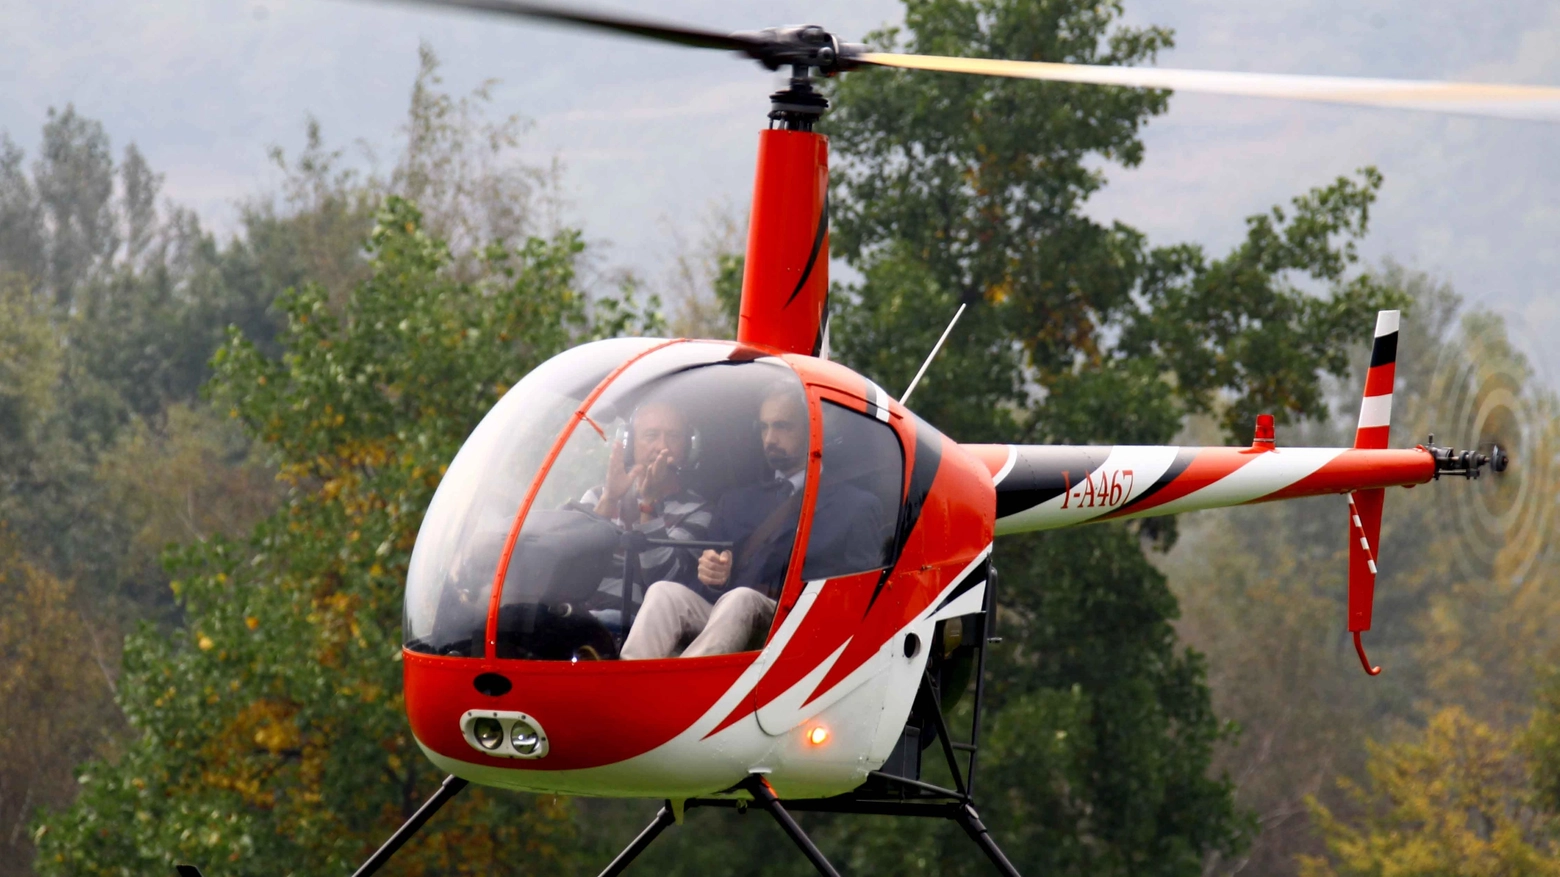 Il vicequestore Gallo pilota l'elicottero R22 (Anp)